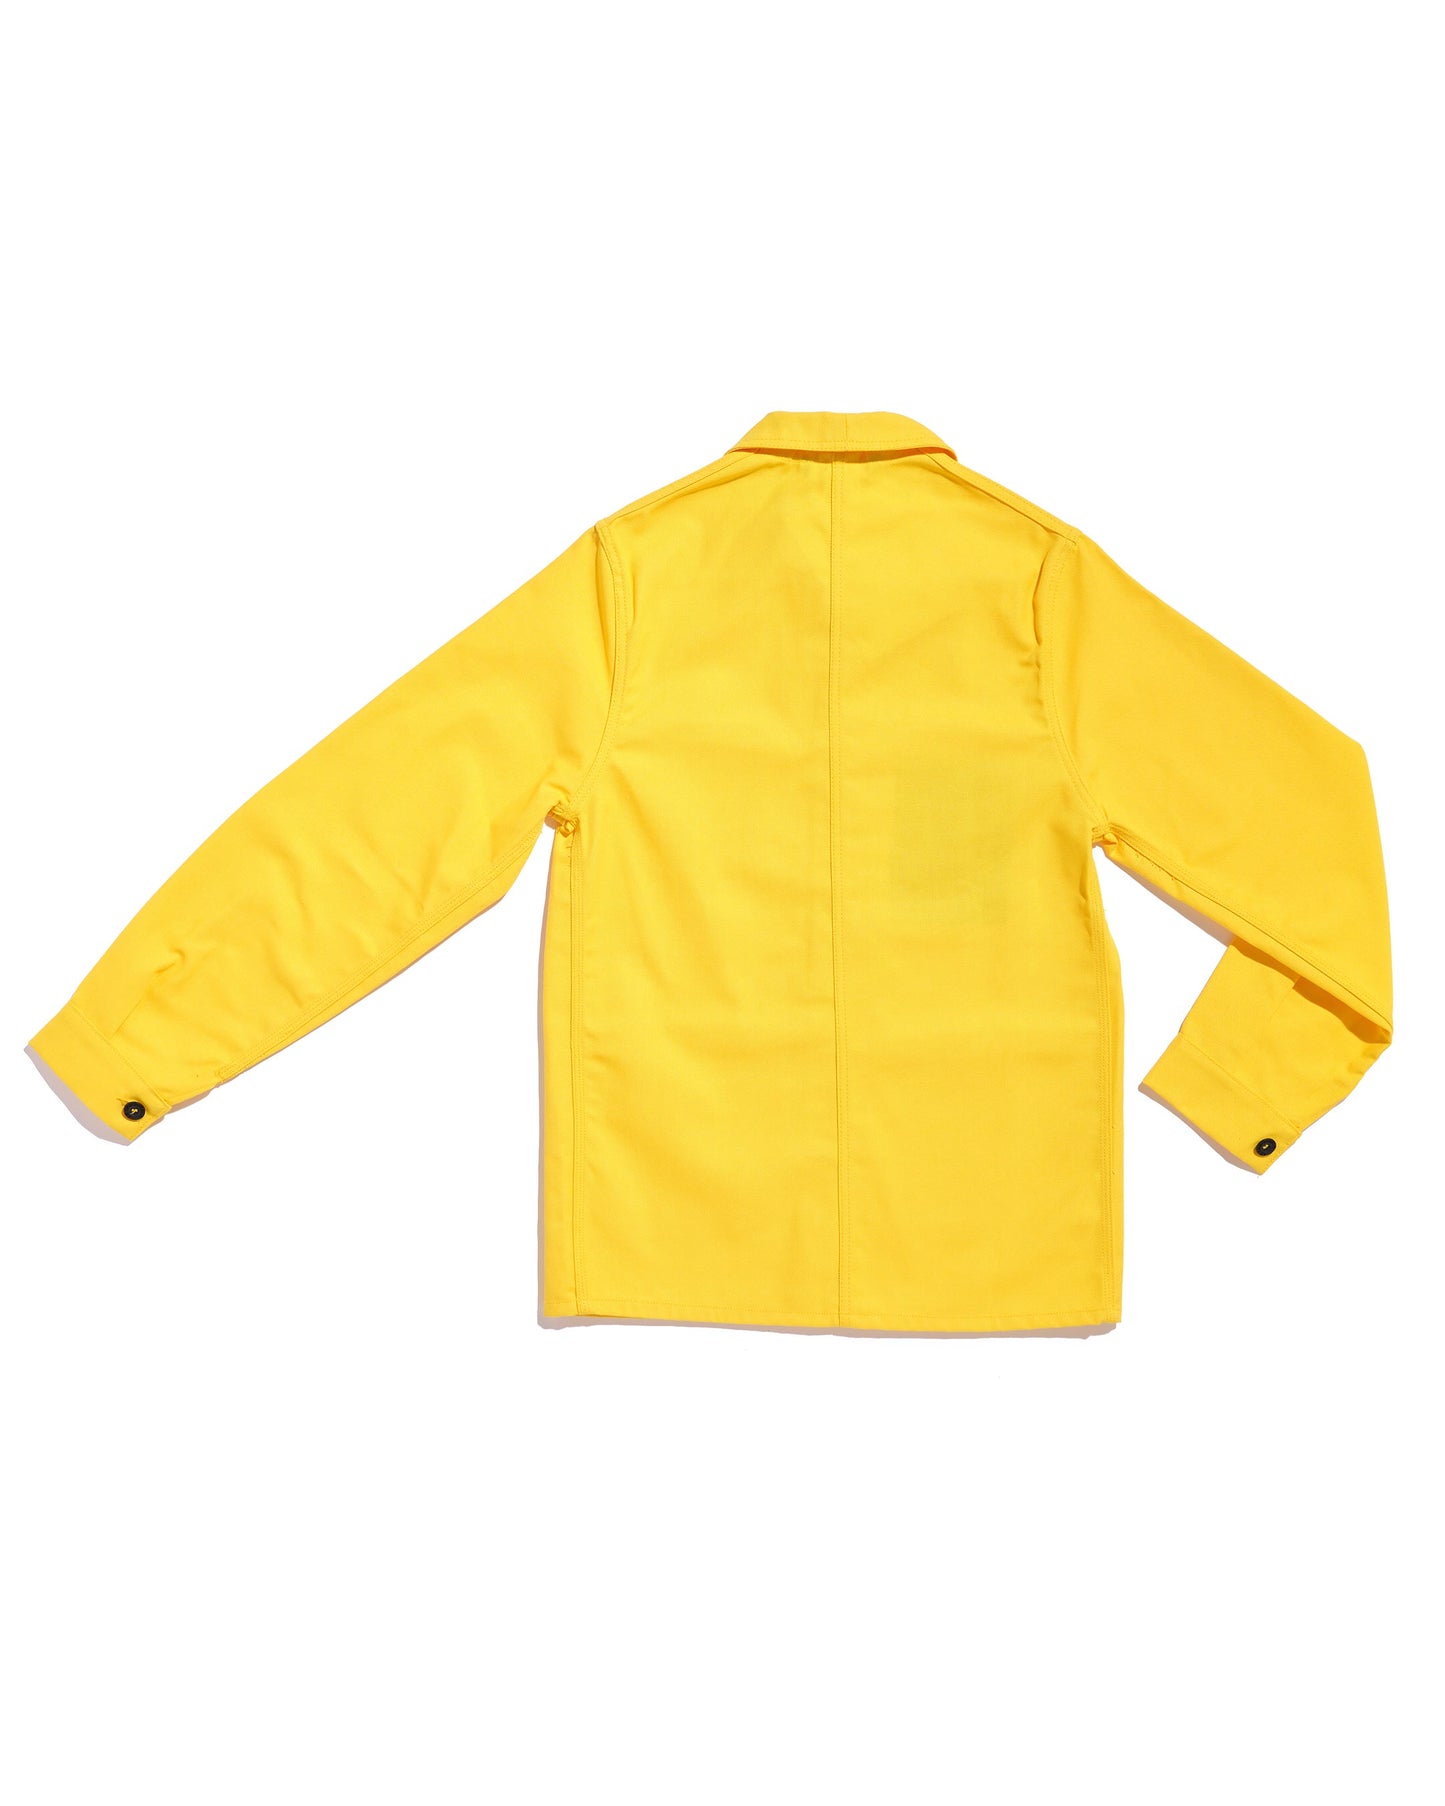 Veste de travail - jaune citron - Le Laboureur